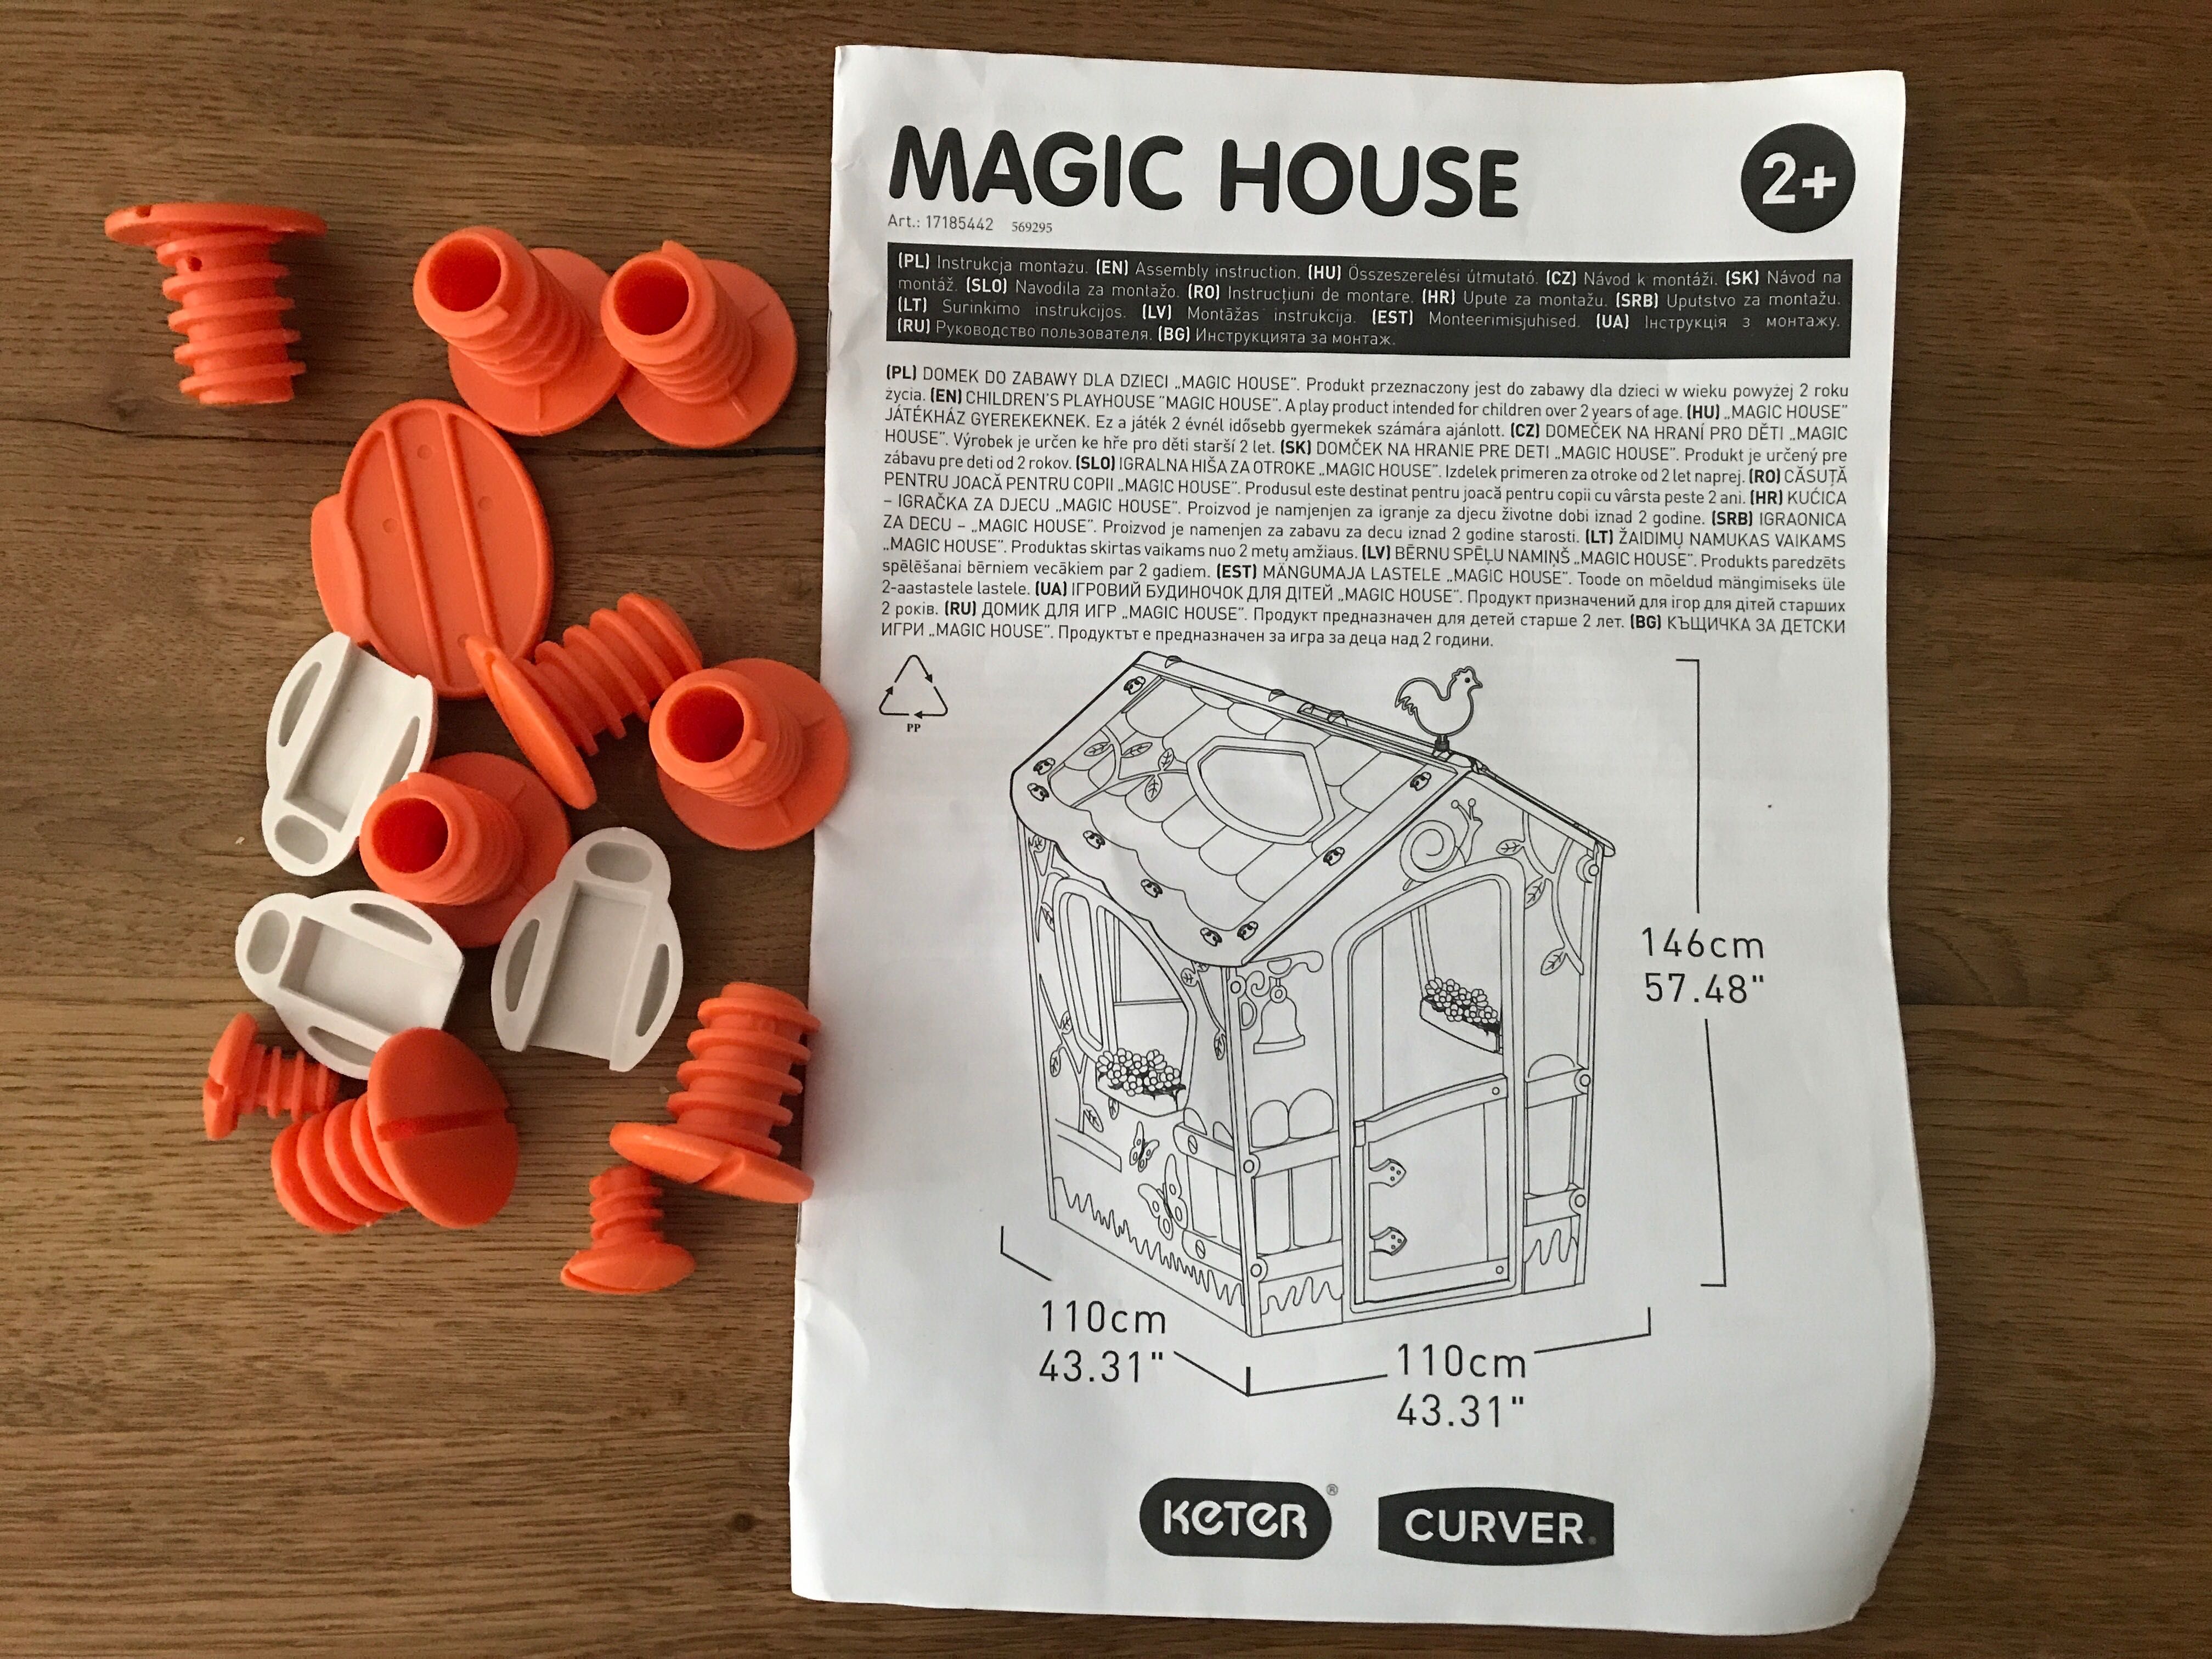 Curver Domek dla dzieci Magic House